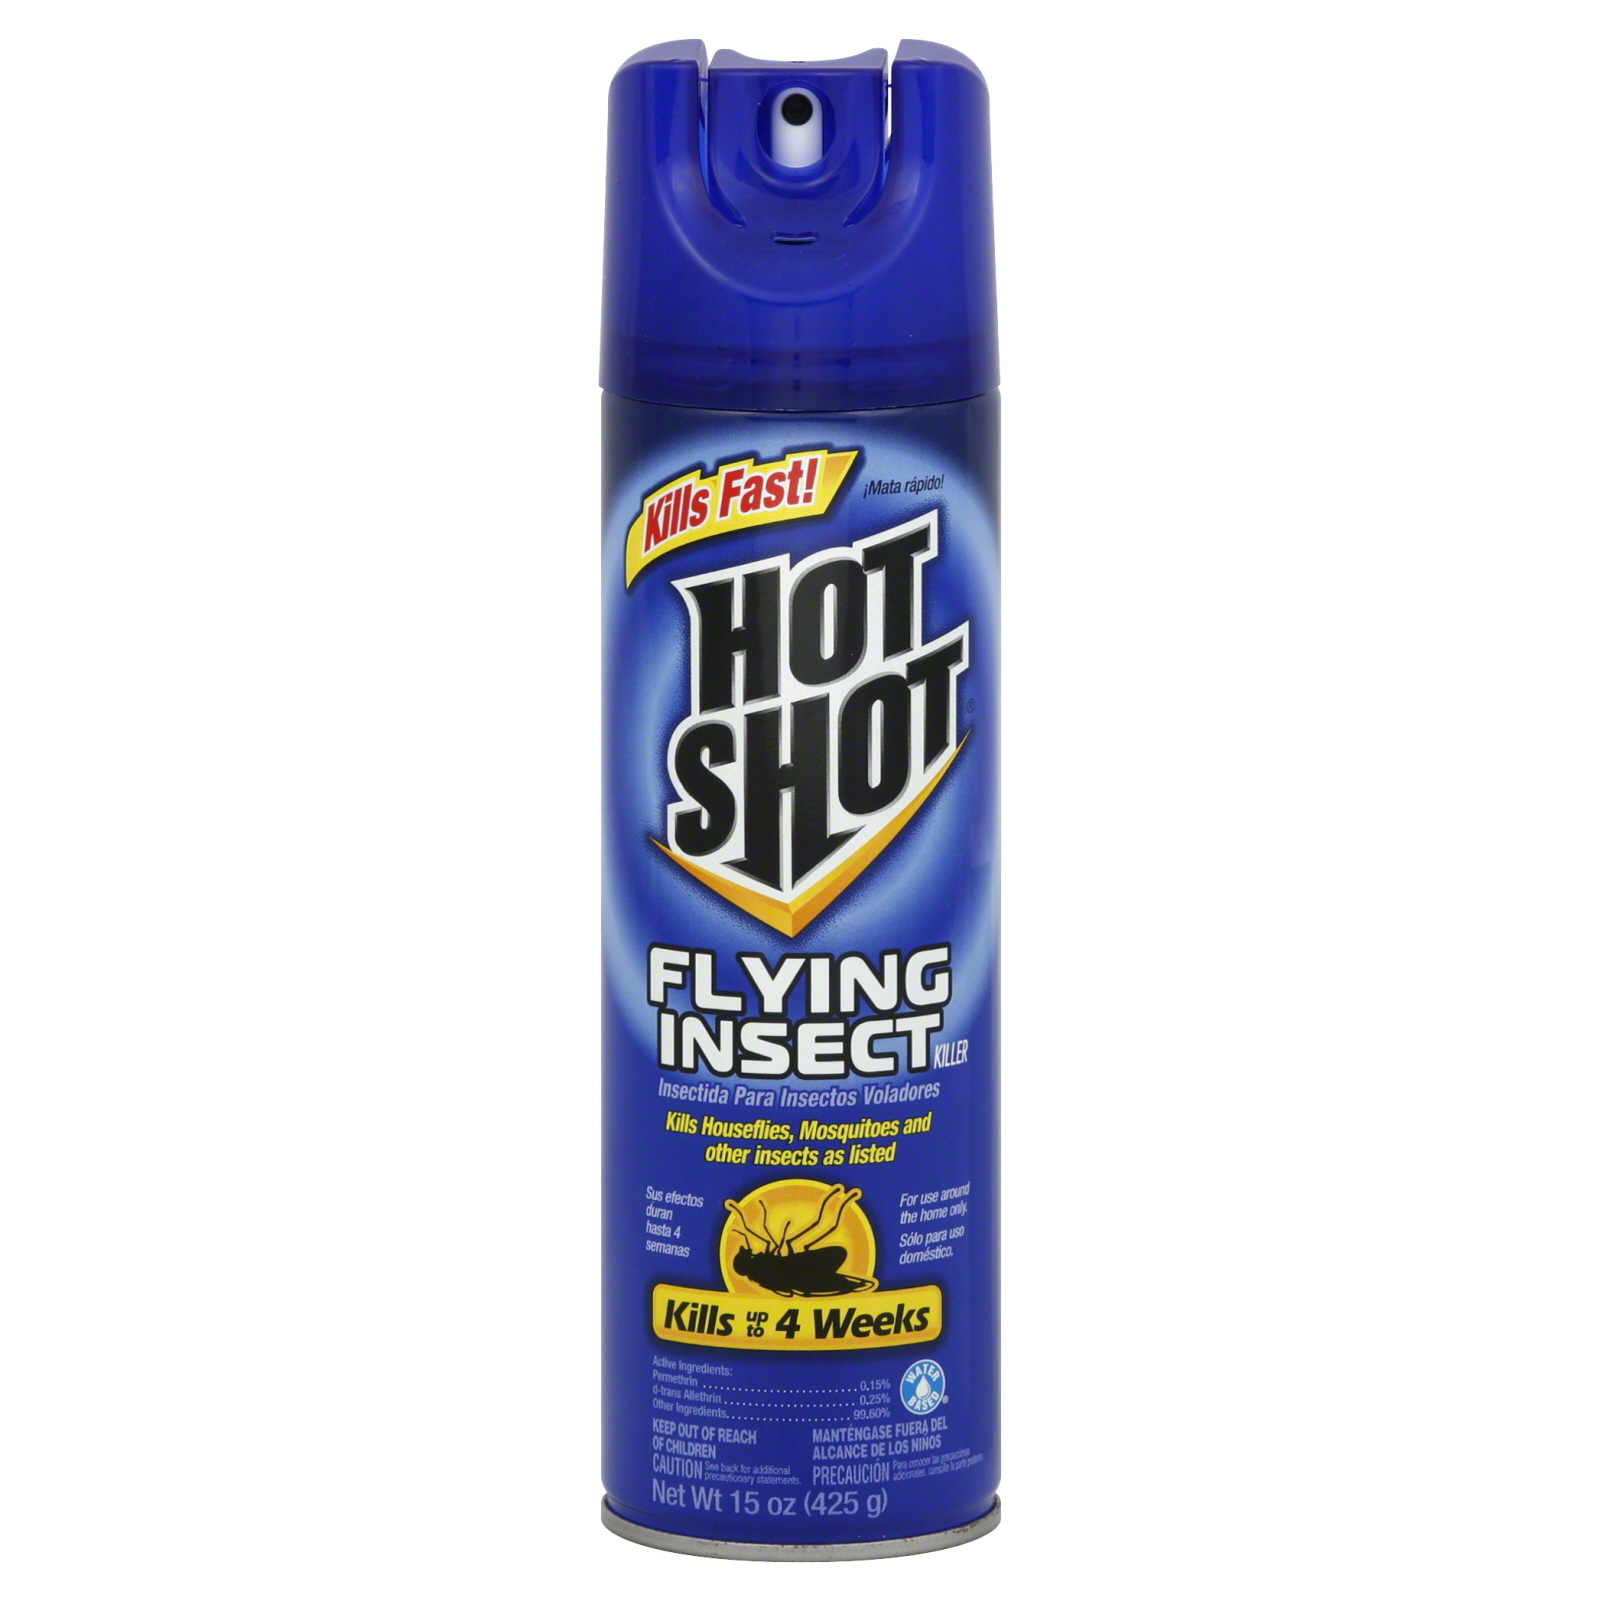 Hot Shot Flying Insect Killer, 15 oz (425 g)